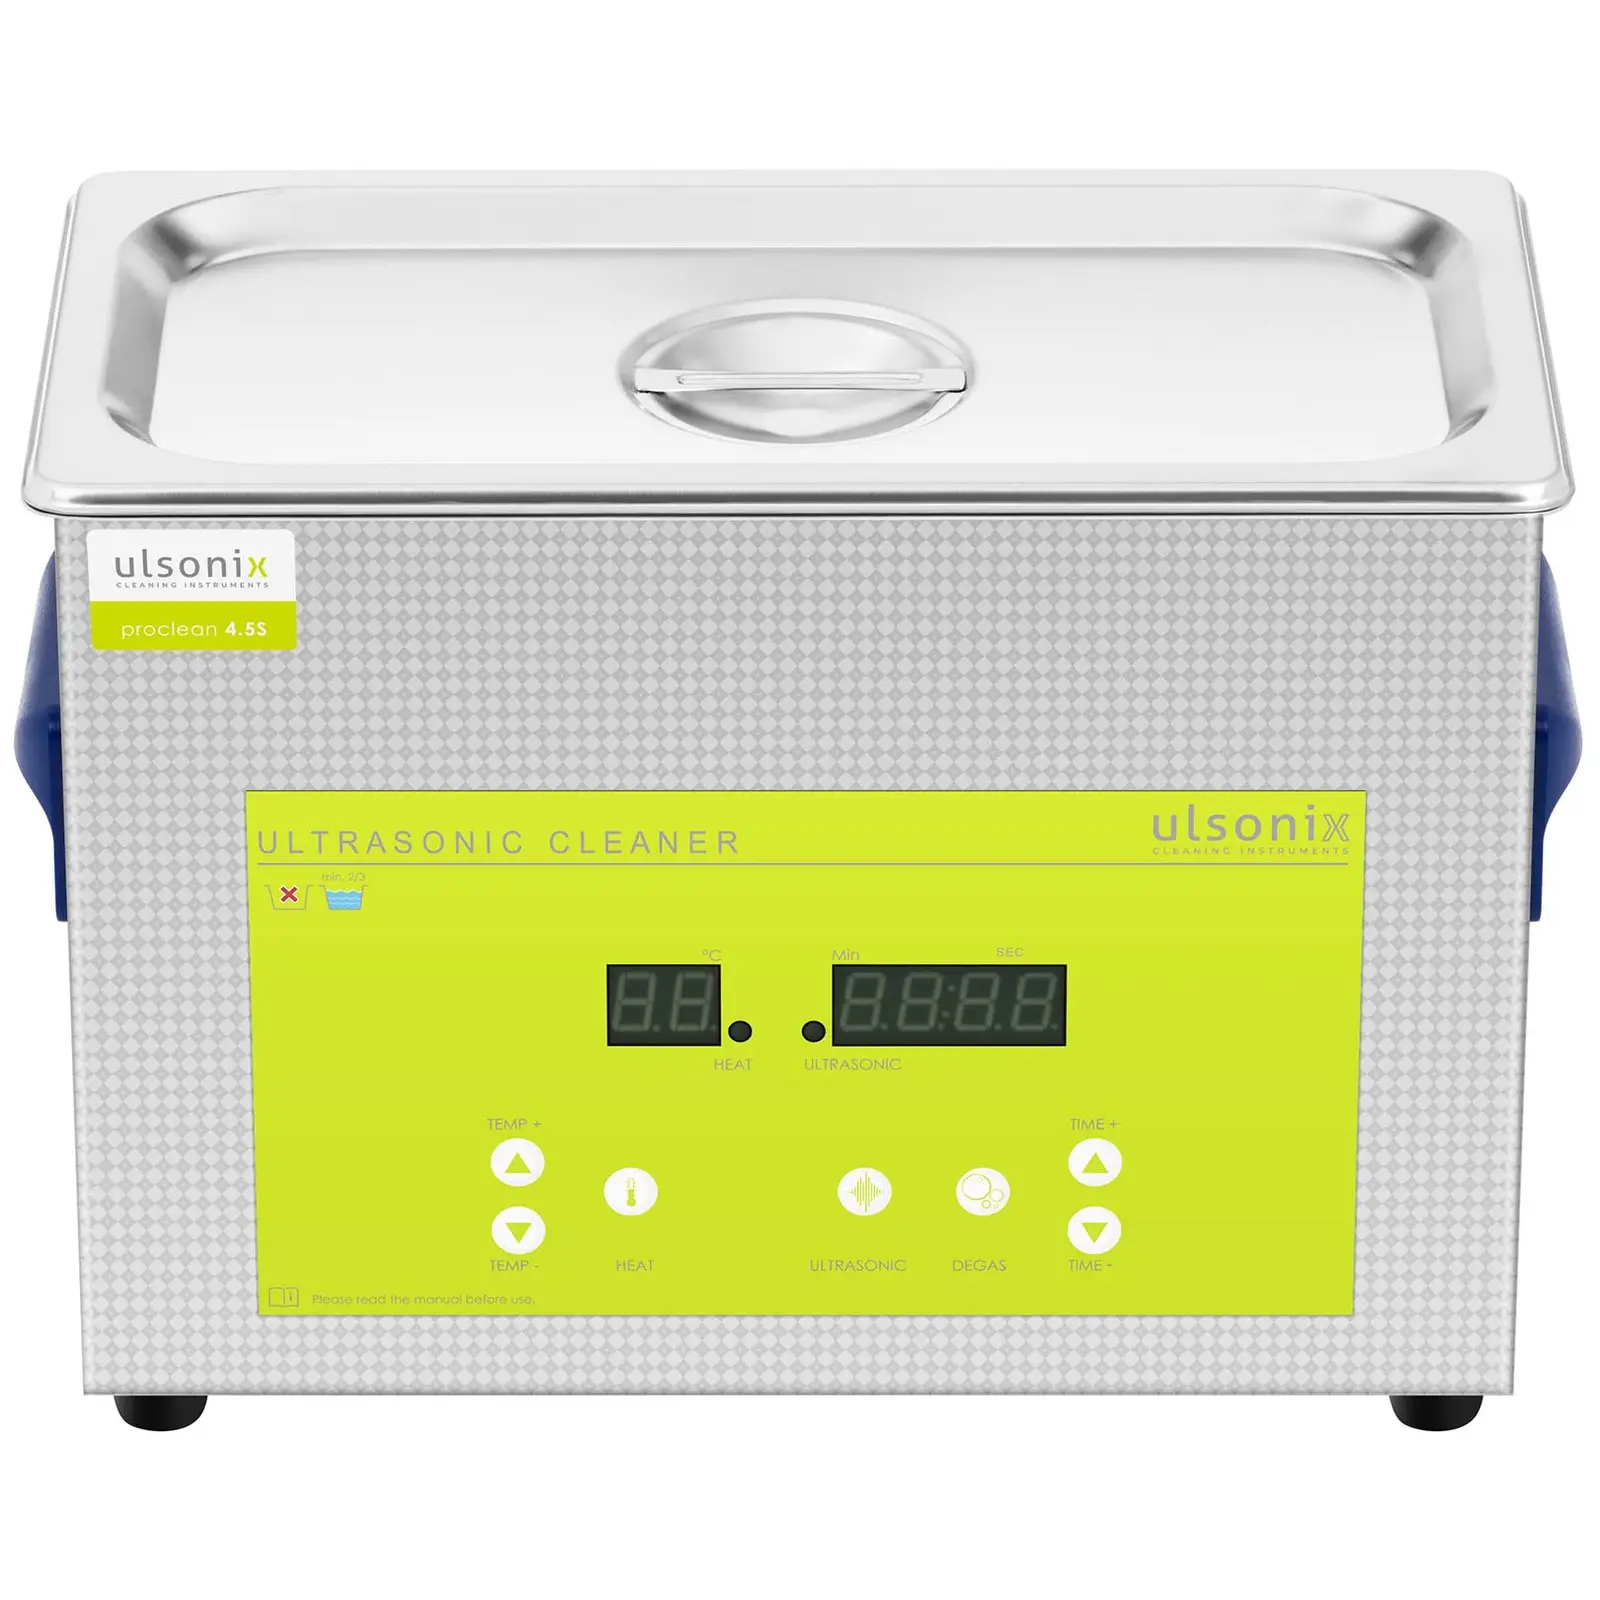 Ultrazvočni čistilec - razplinjevalec - 4,5 L